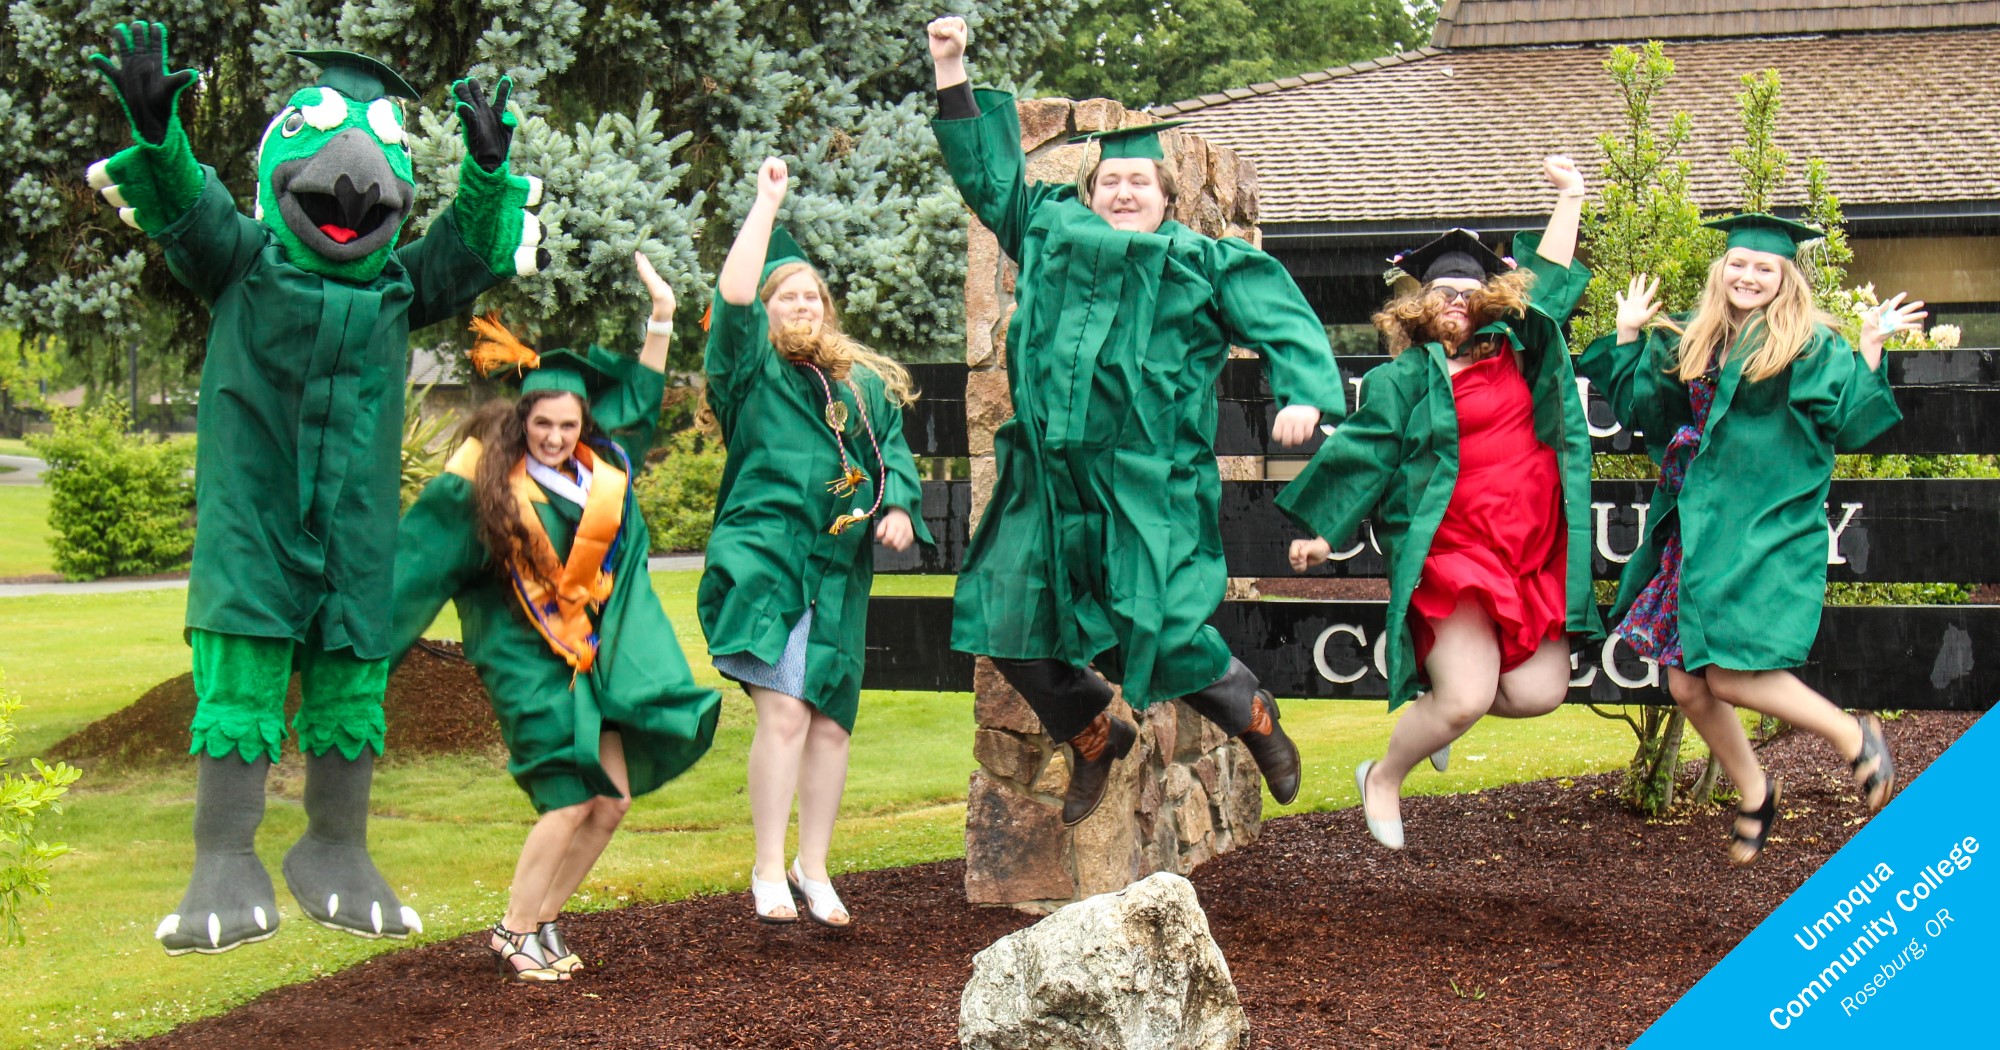 Umpqua Community College graduates jumping